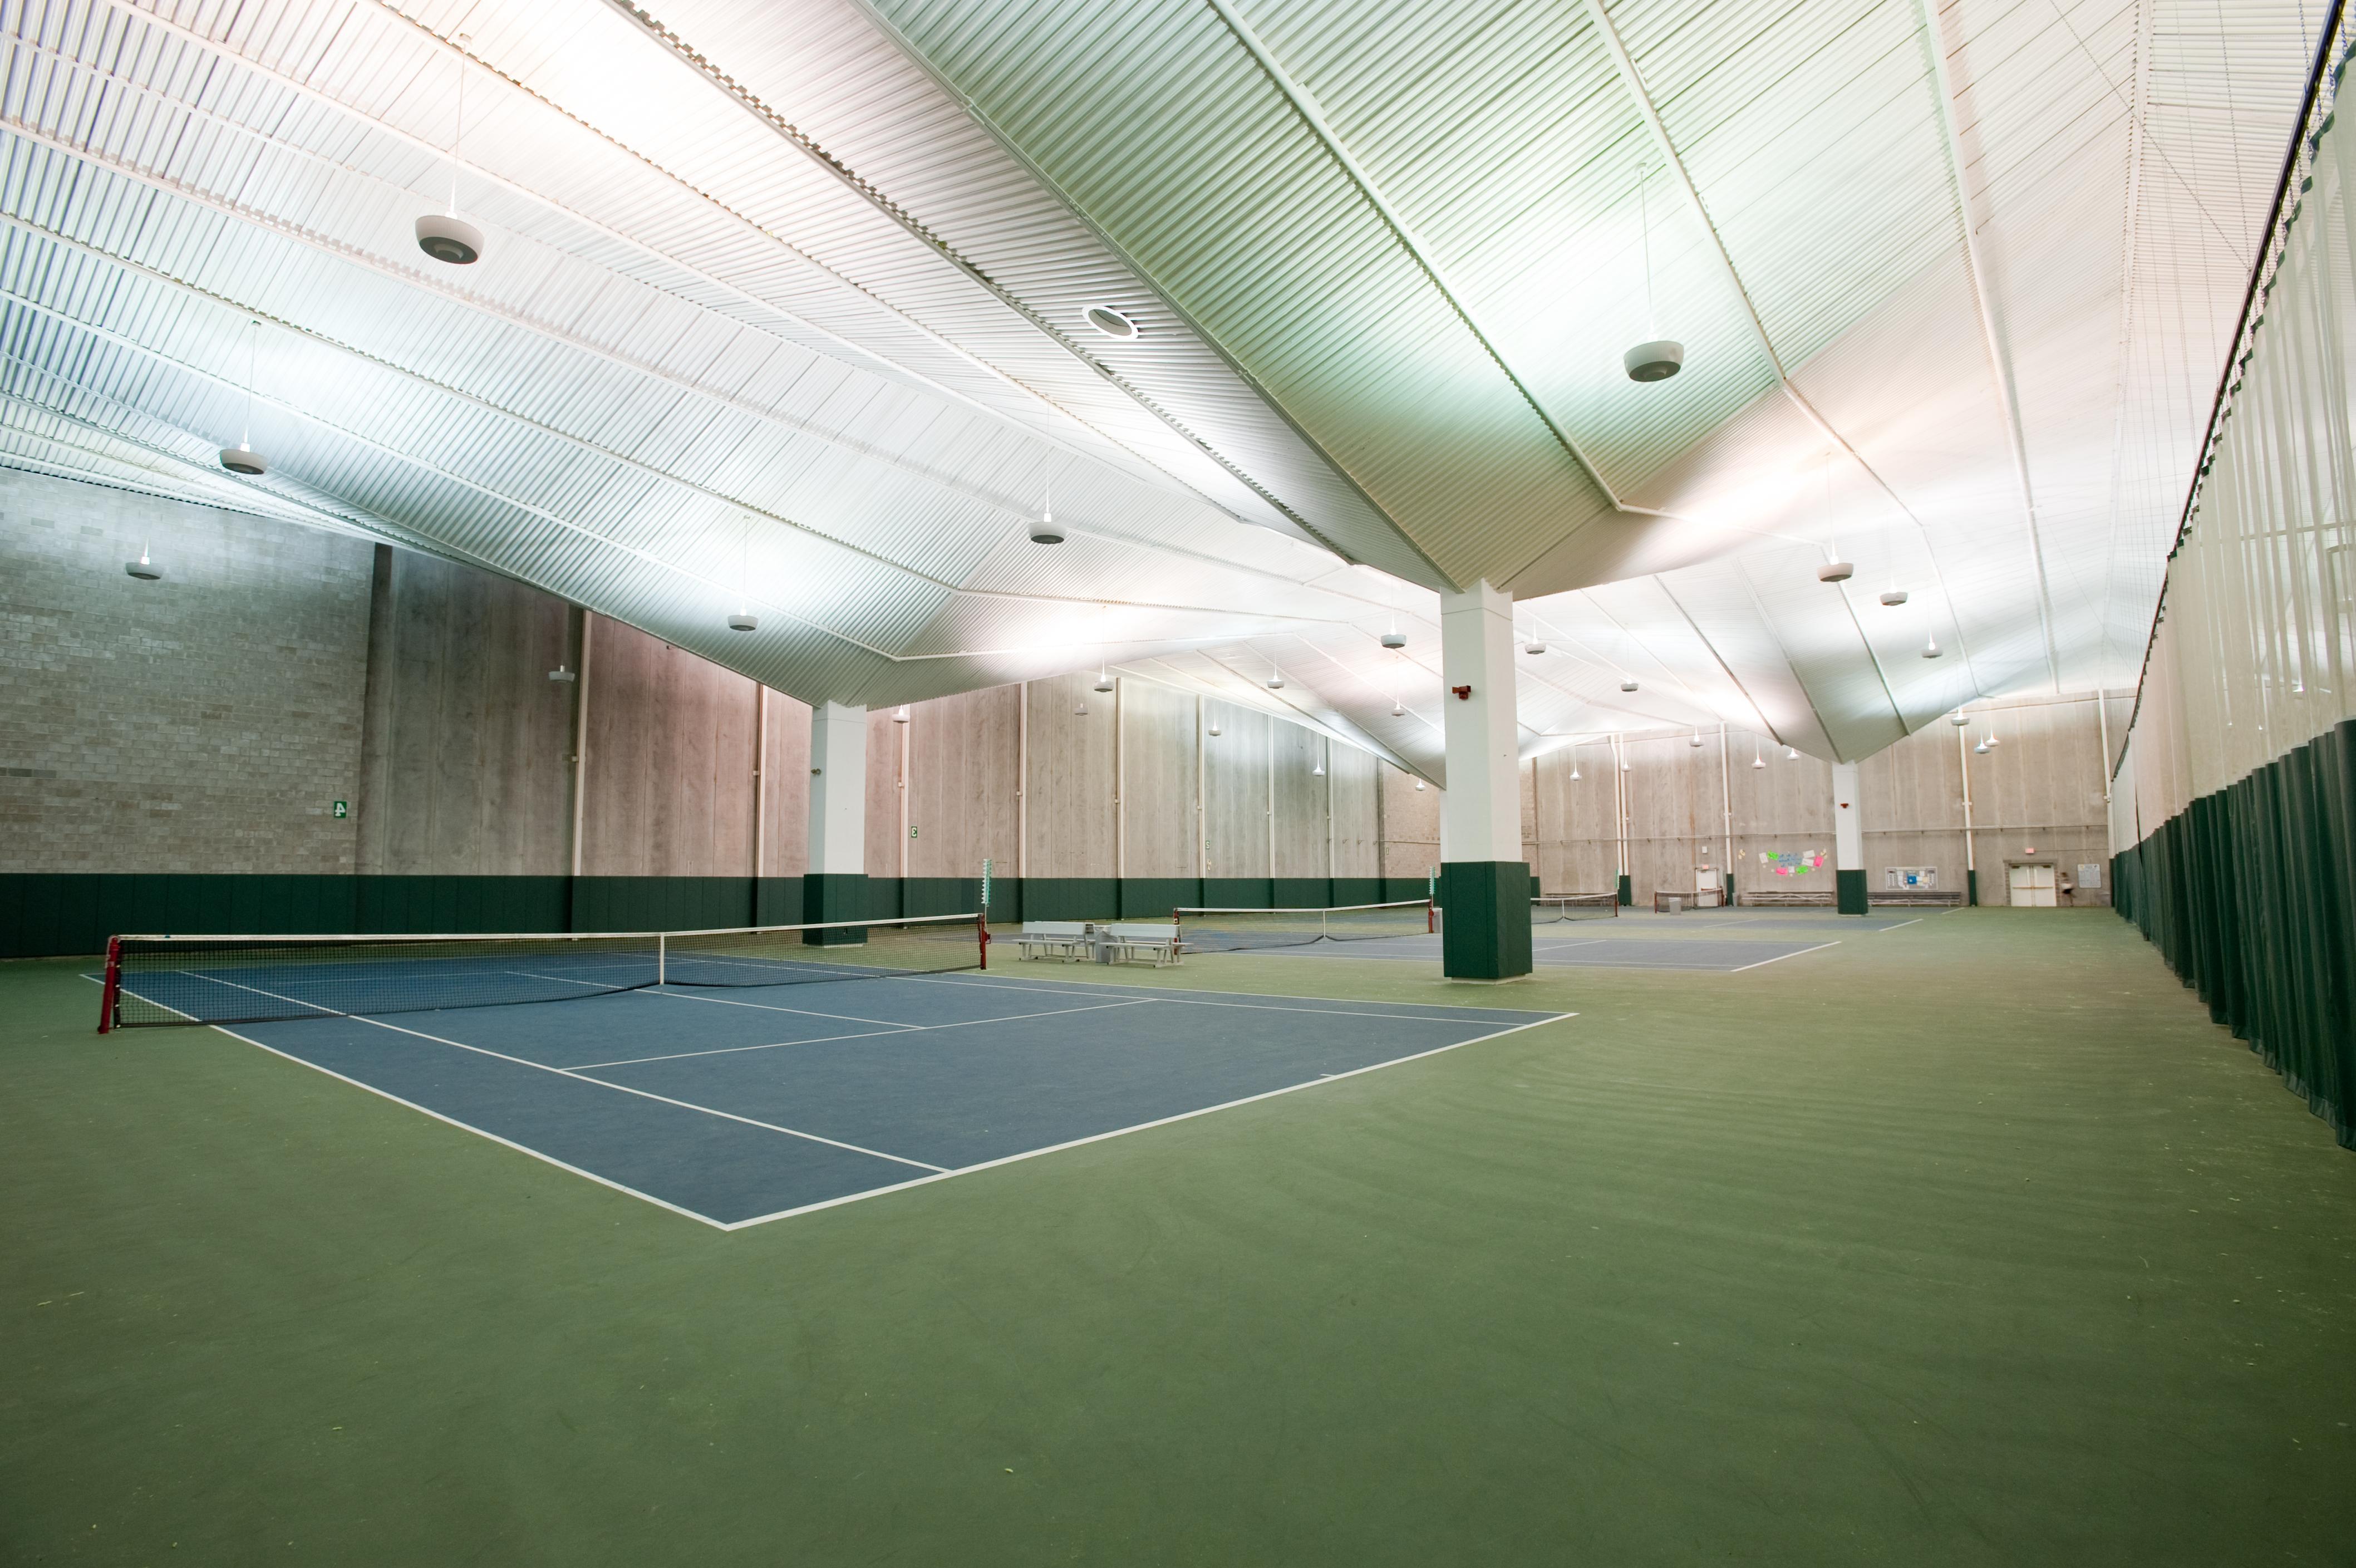 Indoor tennis courts